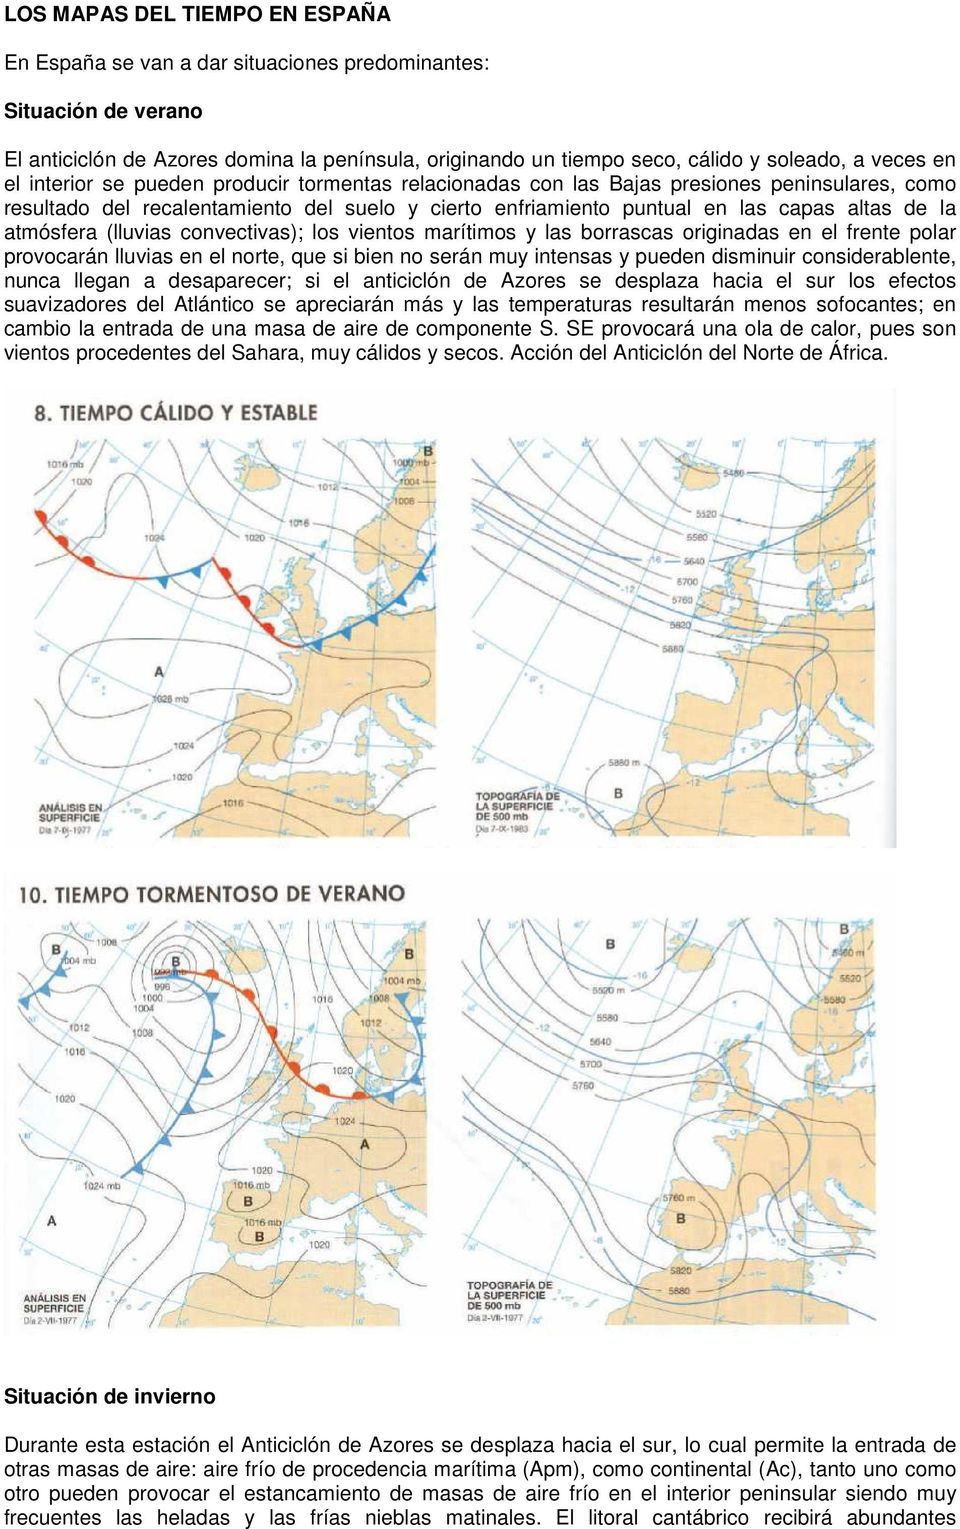 atmósfera (lluvias convectivas); los vientos marítimos y las borrascas originadas en el frente polar provocarán lluvias en el norte, que si bien no serán muy intensas y pueden disminuir